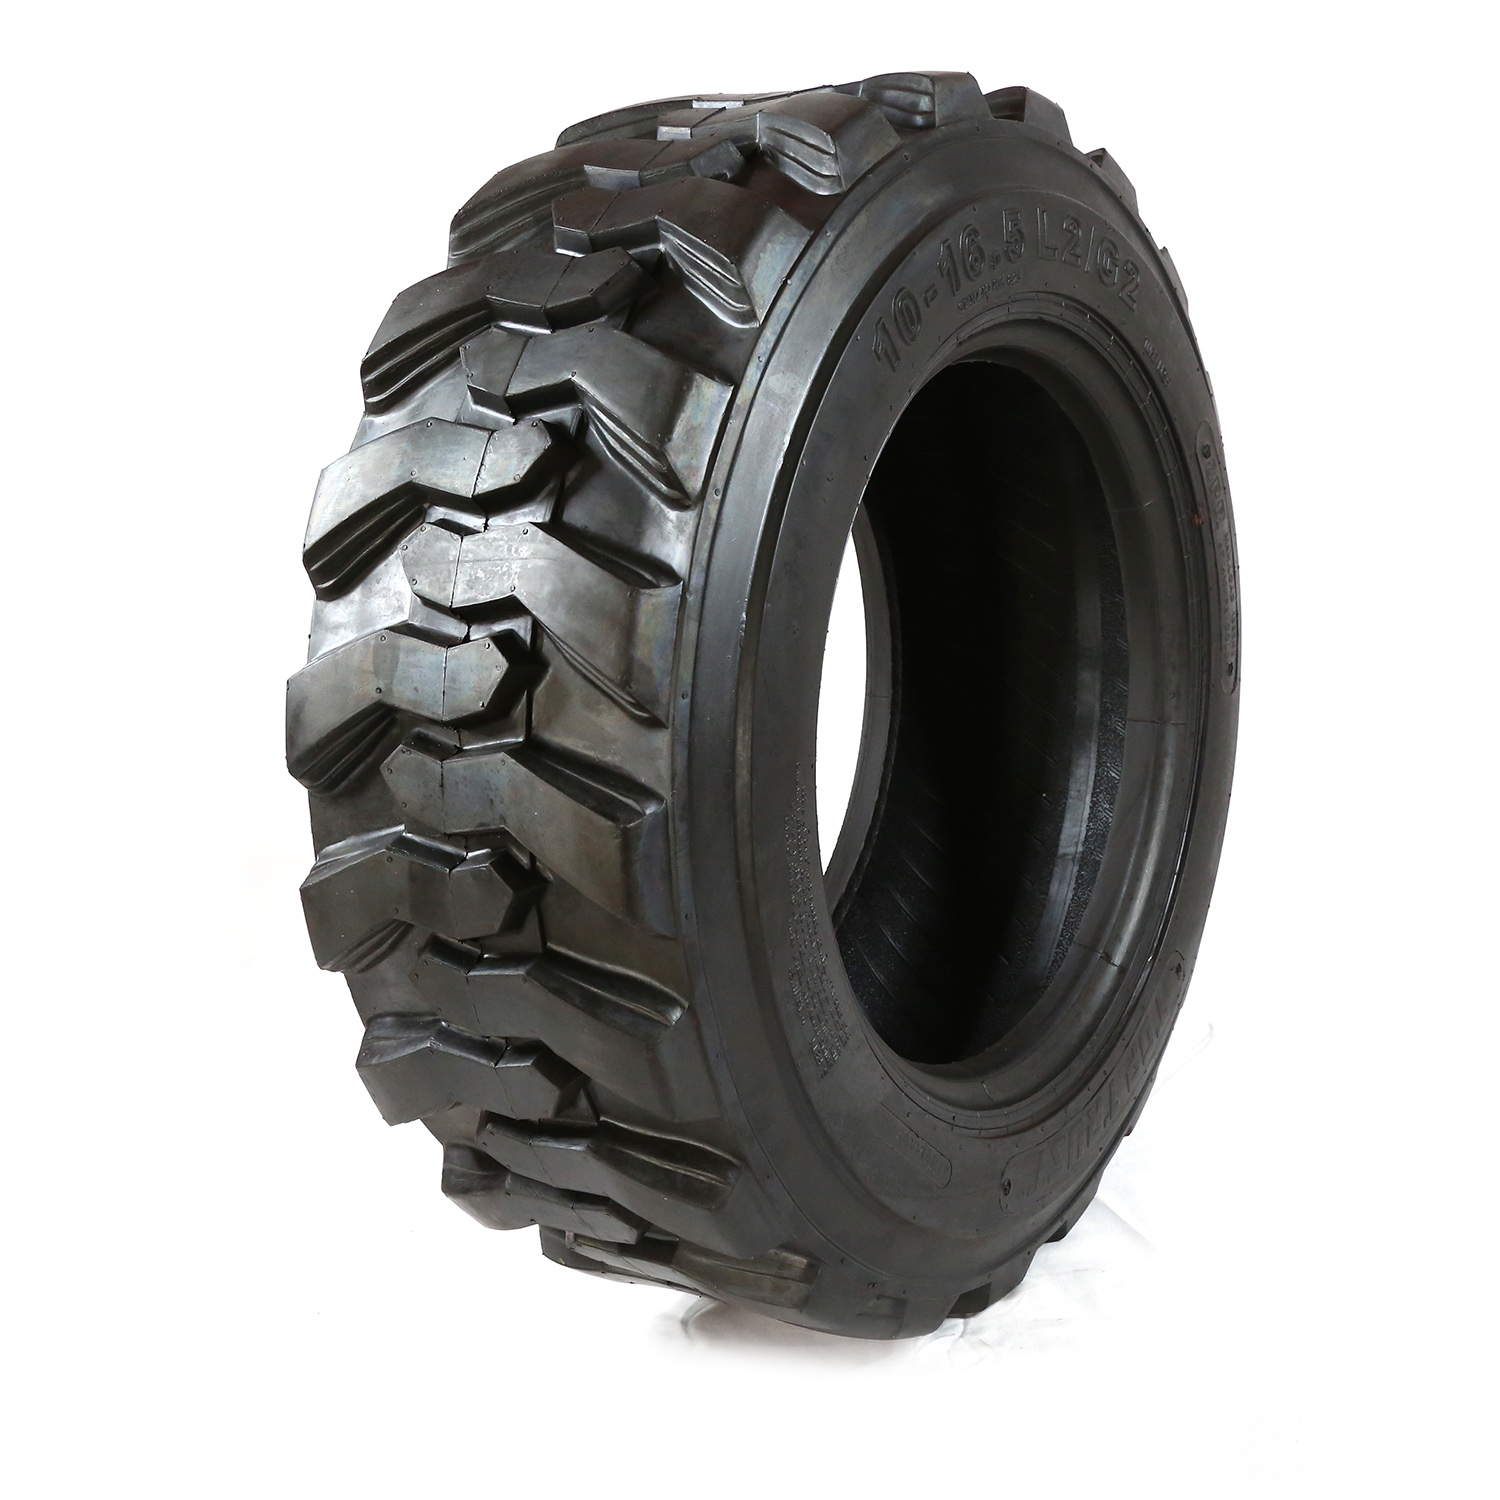 Industrial Pneumatic Tire Skid Steer Loader Tire Forklift Tires L-2 10-16.5 12-16.5 14-17.5 15-19.5